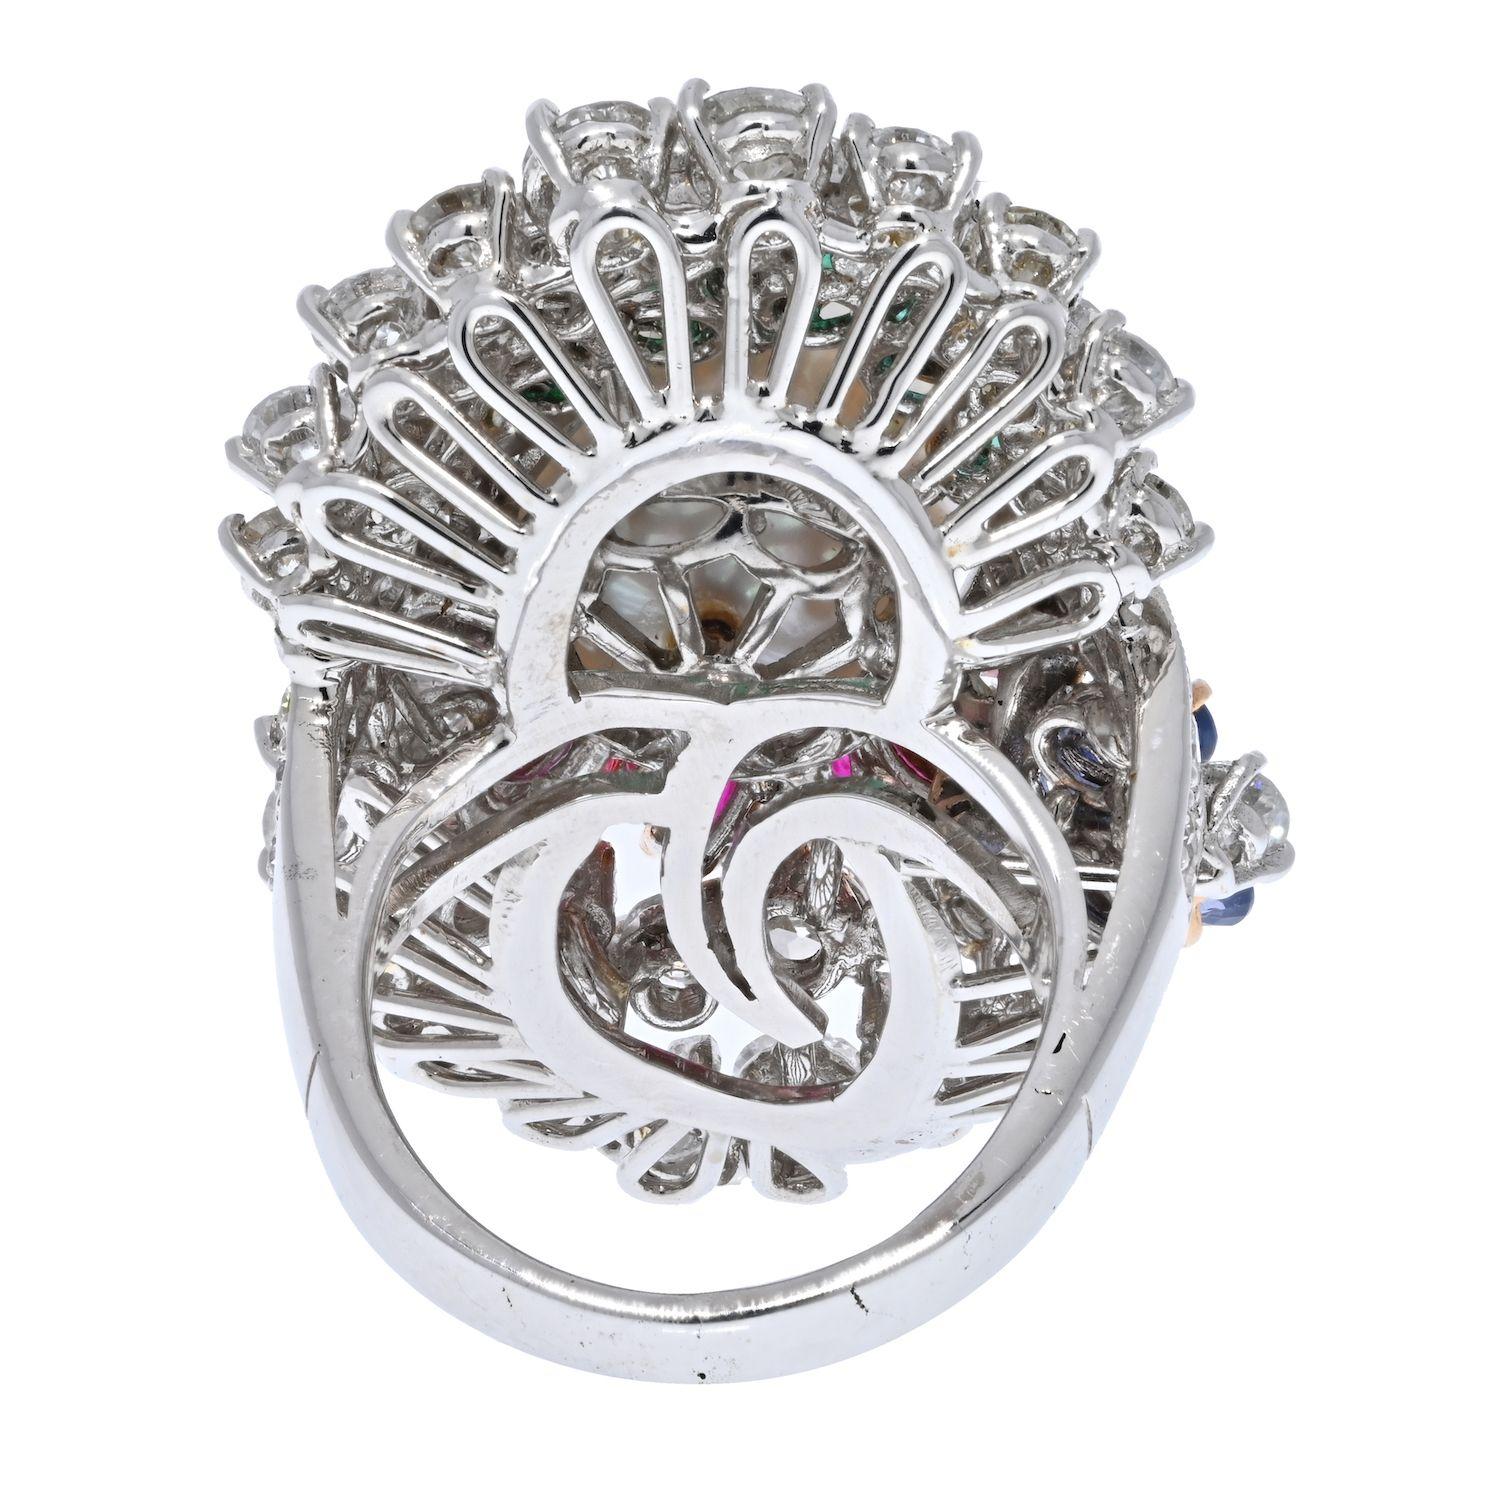 Dies ist ein Ring aus unserer Nachlasskollektion: Er ist aus 14 K Weißgold gefertigt und mit Diamanten, Rubinen und grünen Smaragden verziert, in deren Mitte eine wunderschöne Südseeperle sitzt. Dieser Ring deckt einen großen Teil des Fingers ab,